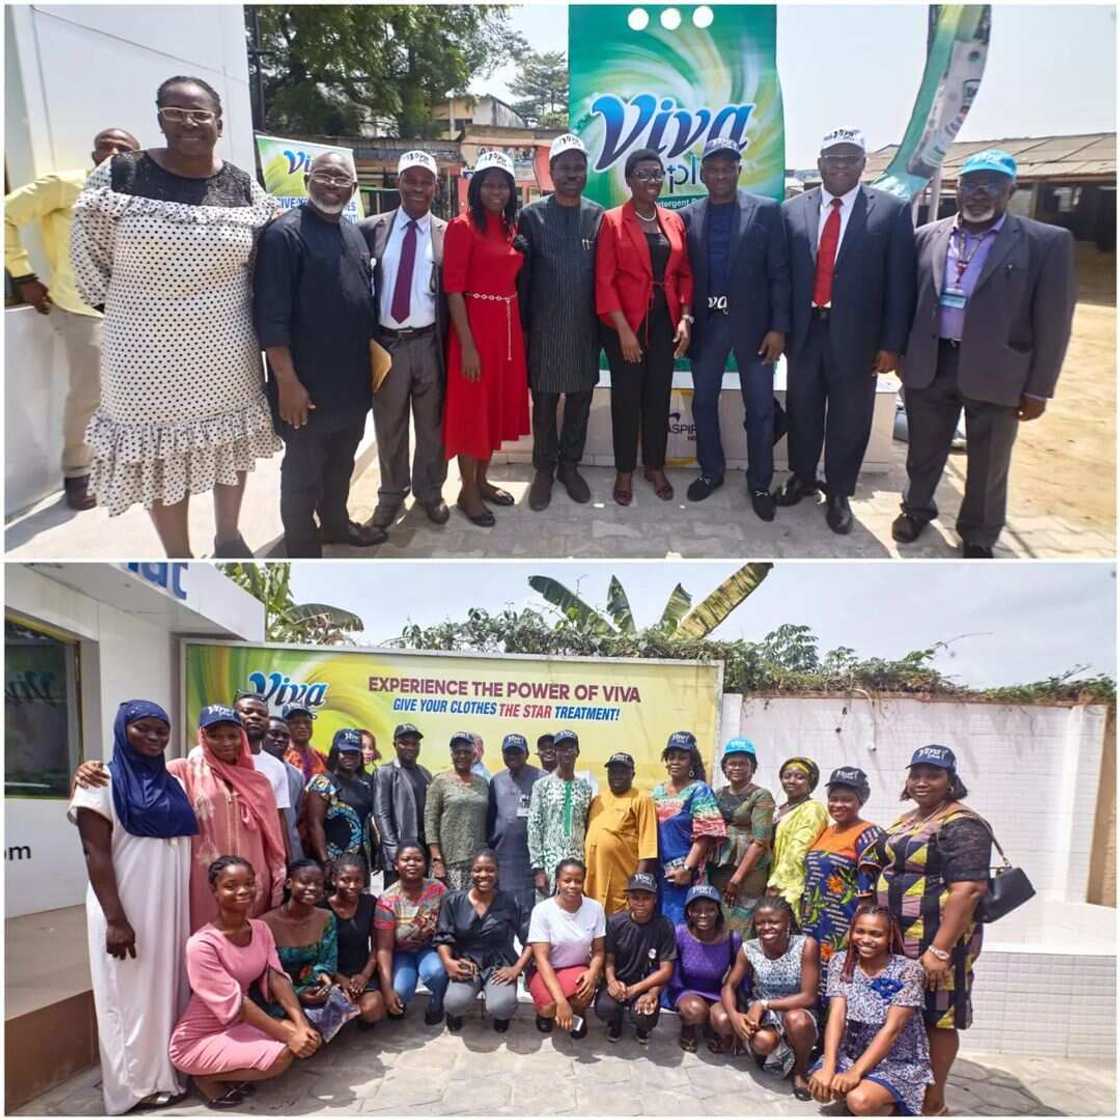 Aspira unveils Viva Laundromat in Kano, Lagos & Ibadan Universities